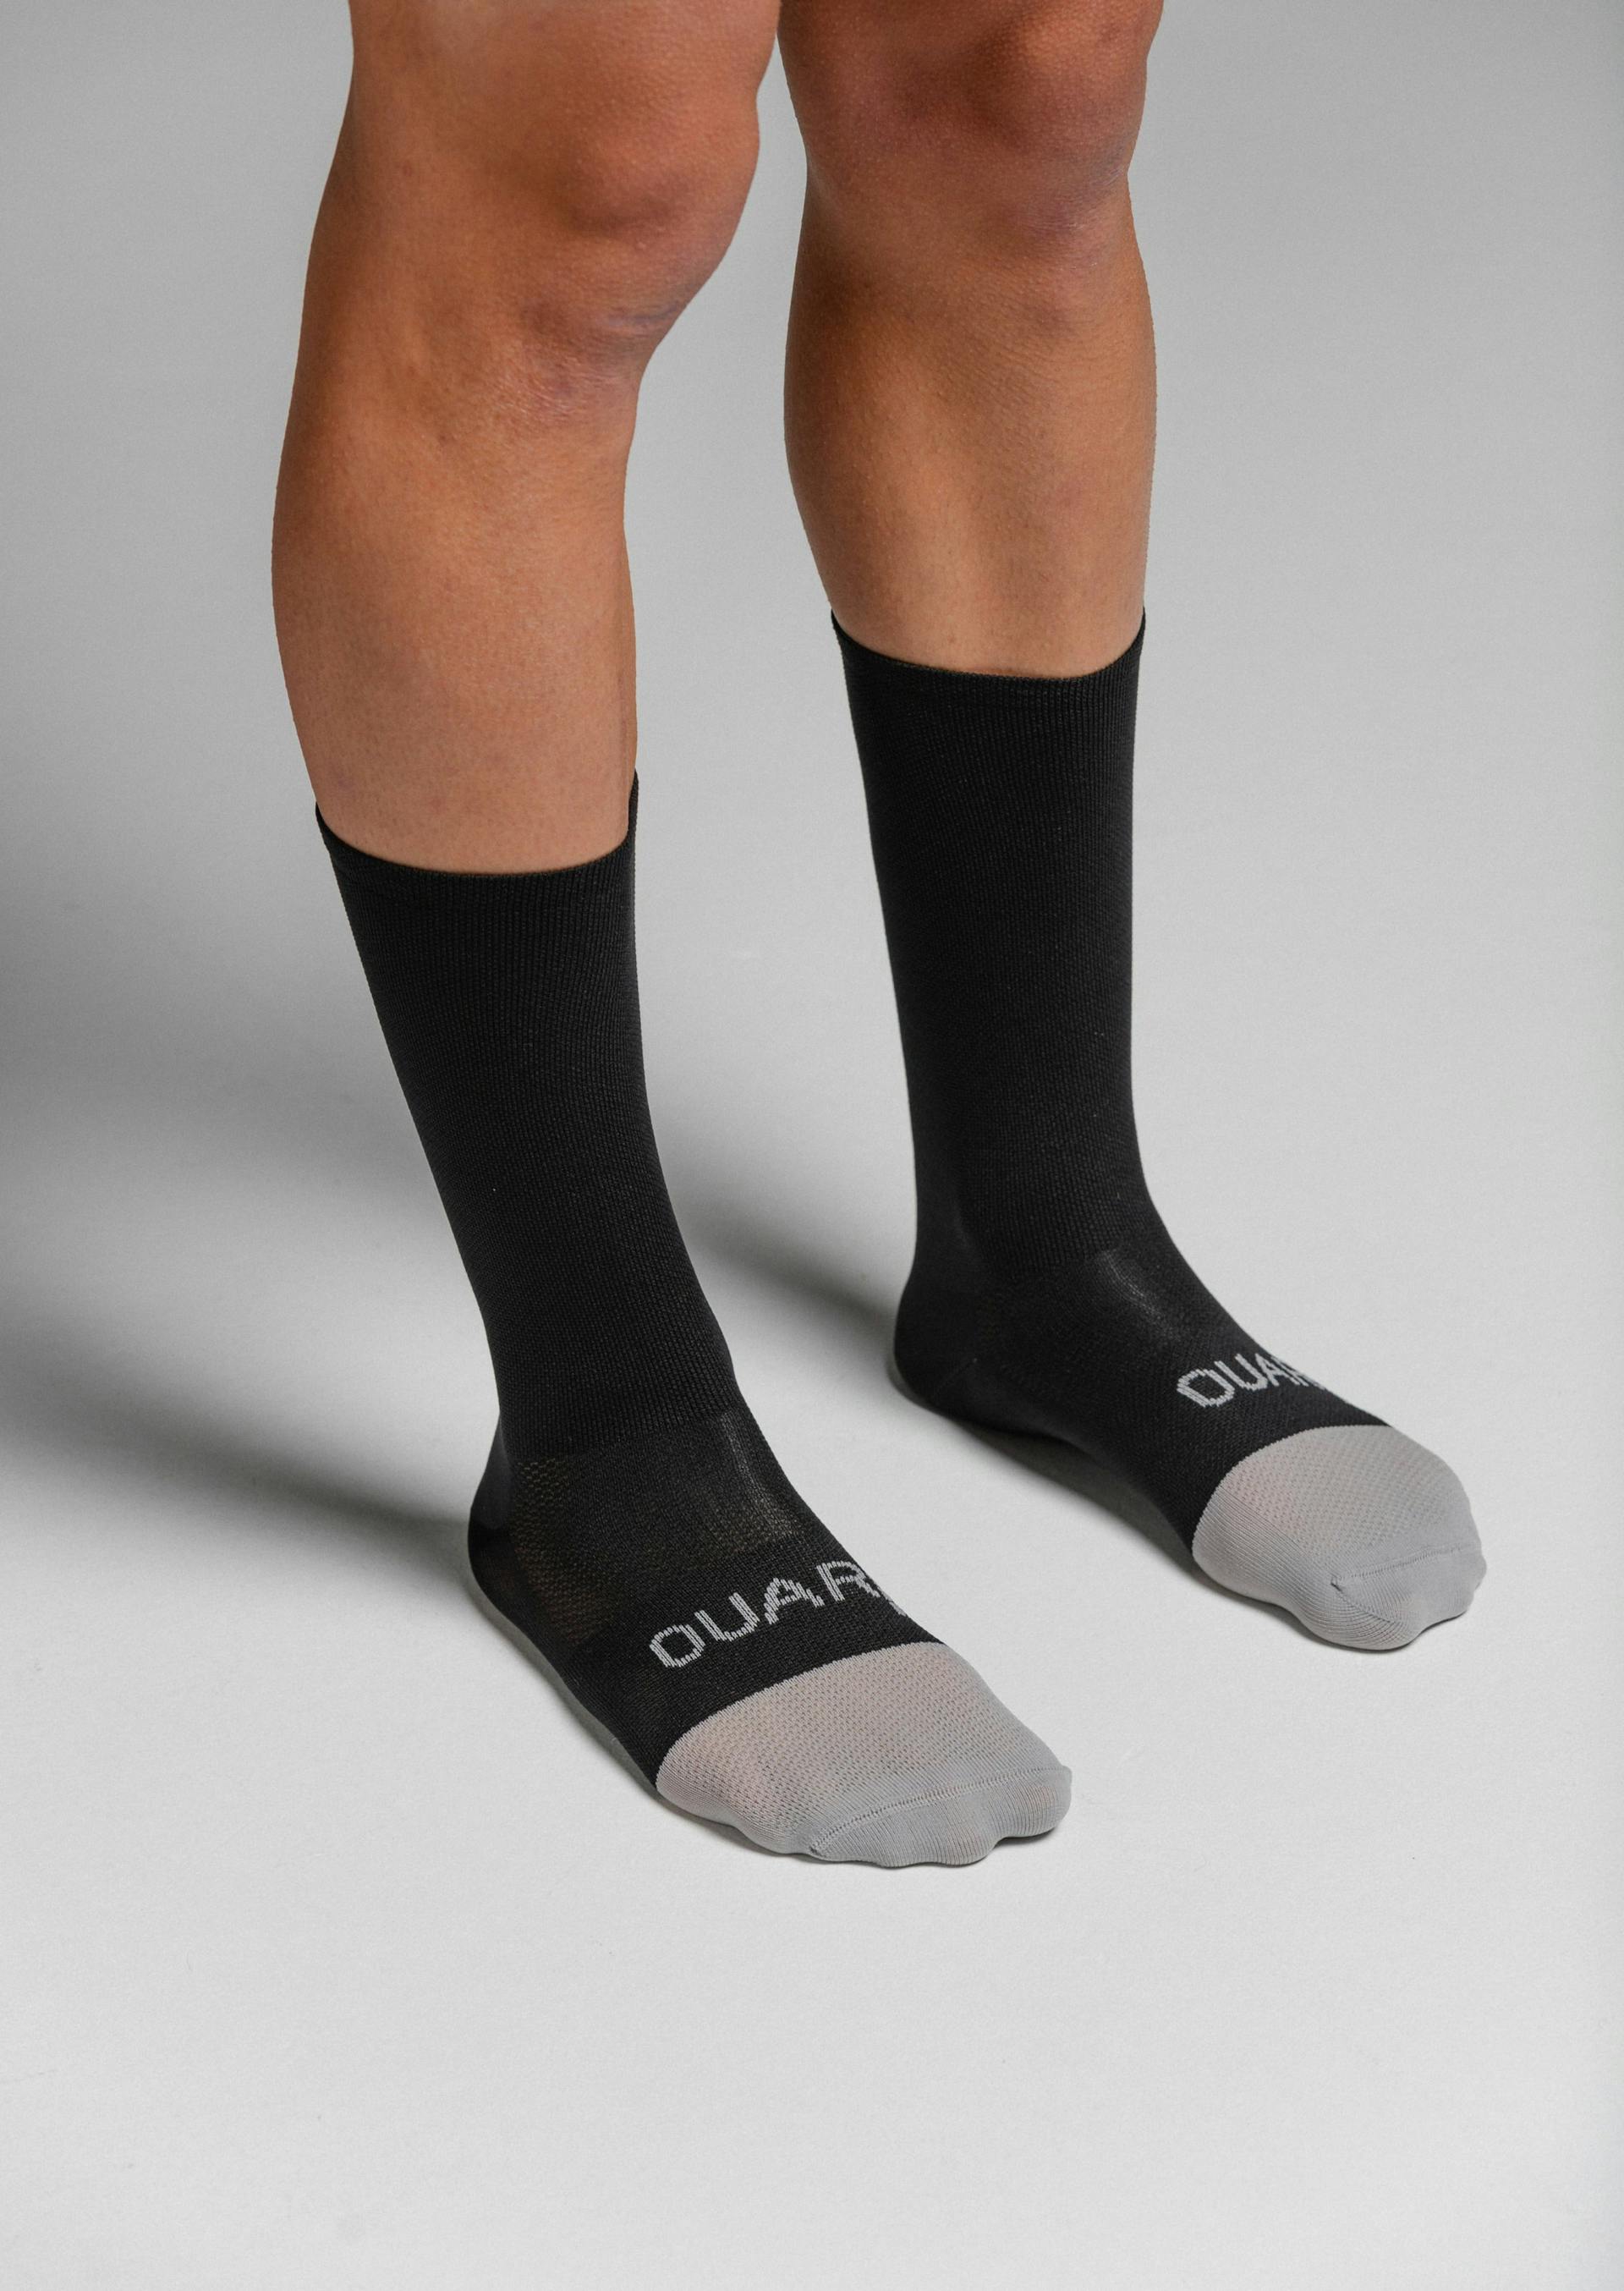 Black/Grey - Evo Socks